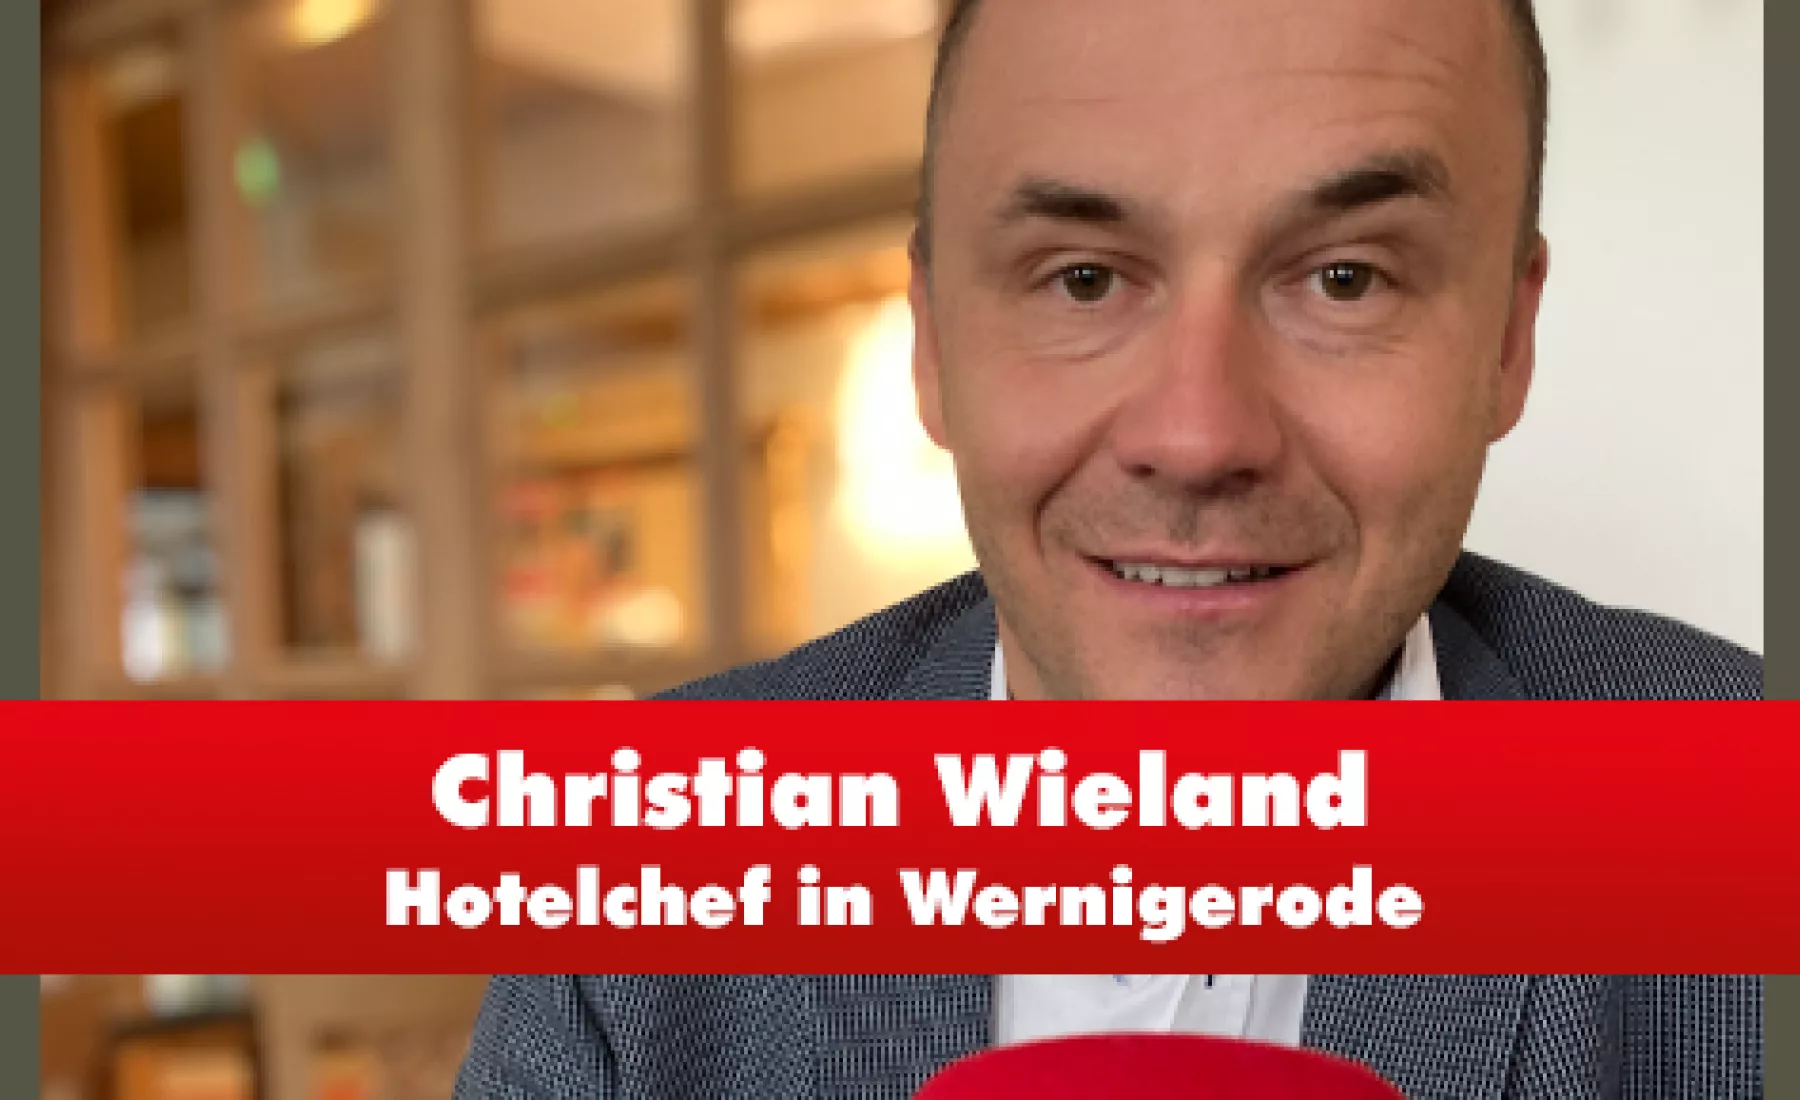 Christian Wieland vom Hotel "Weißer Hirsch" in Wernigerode